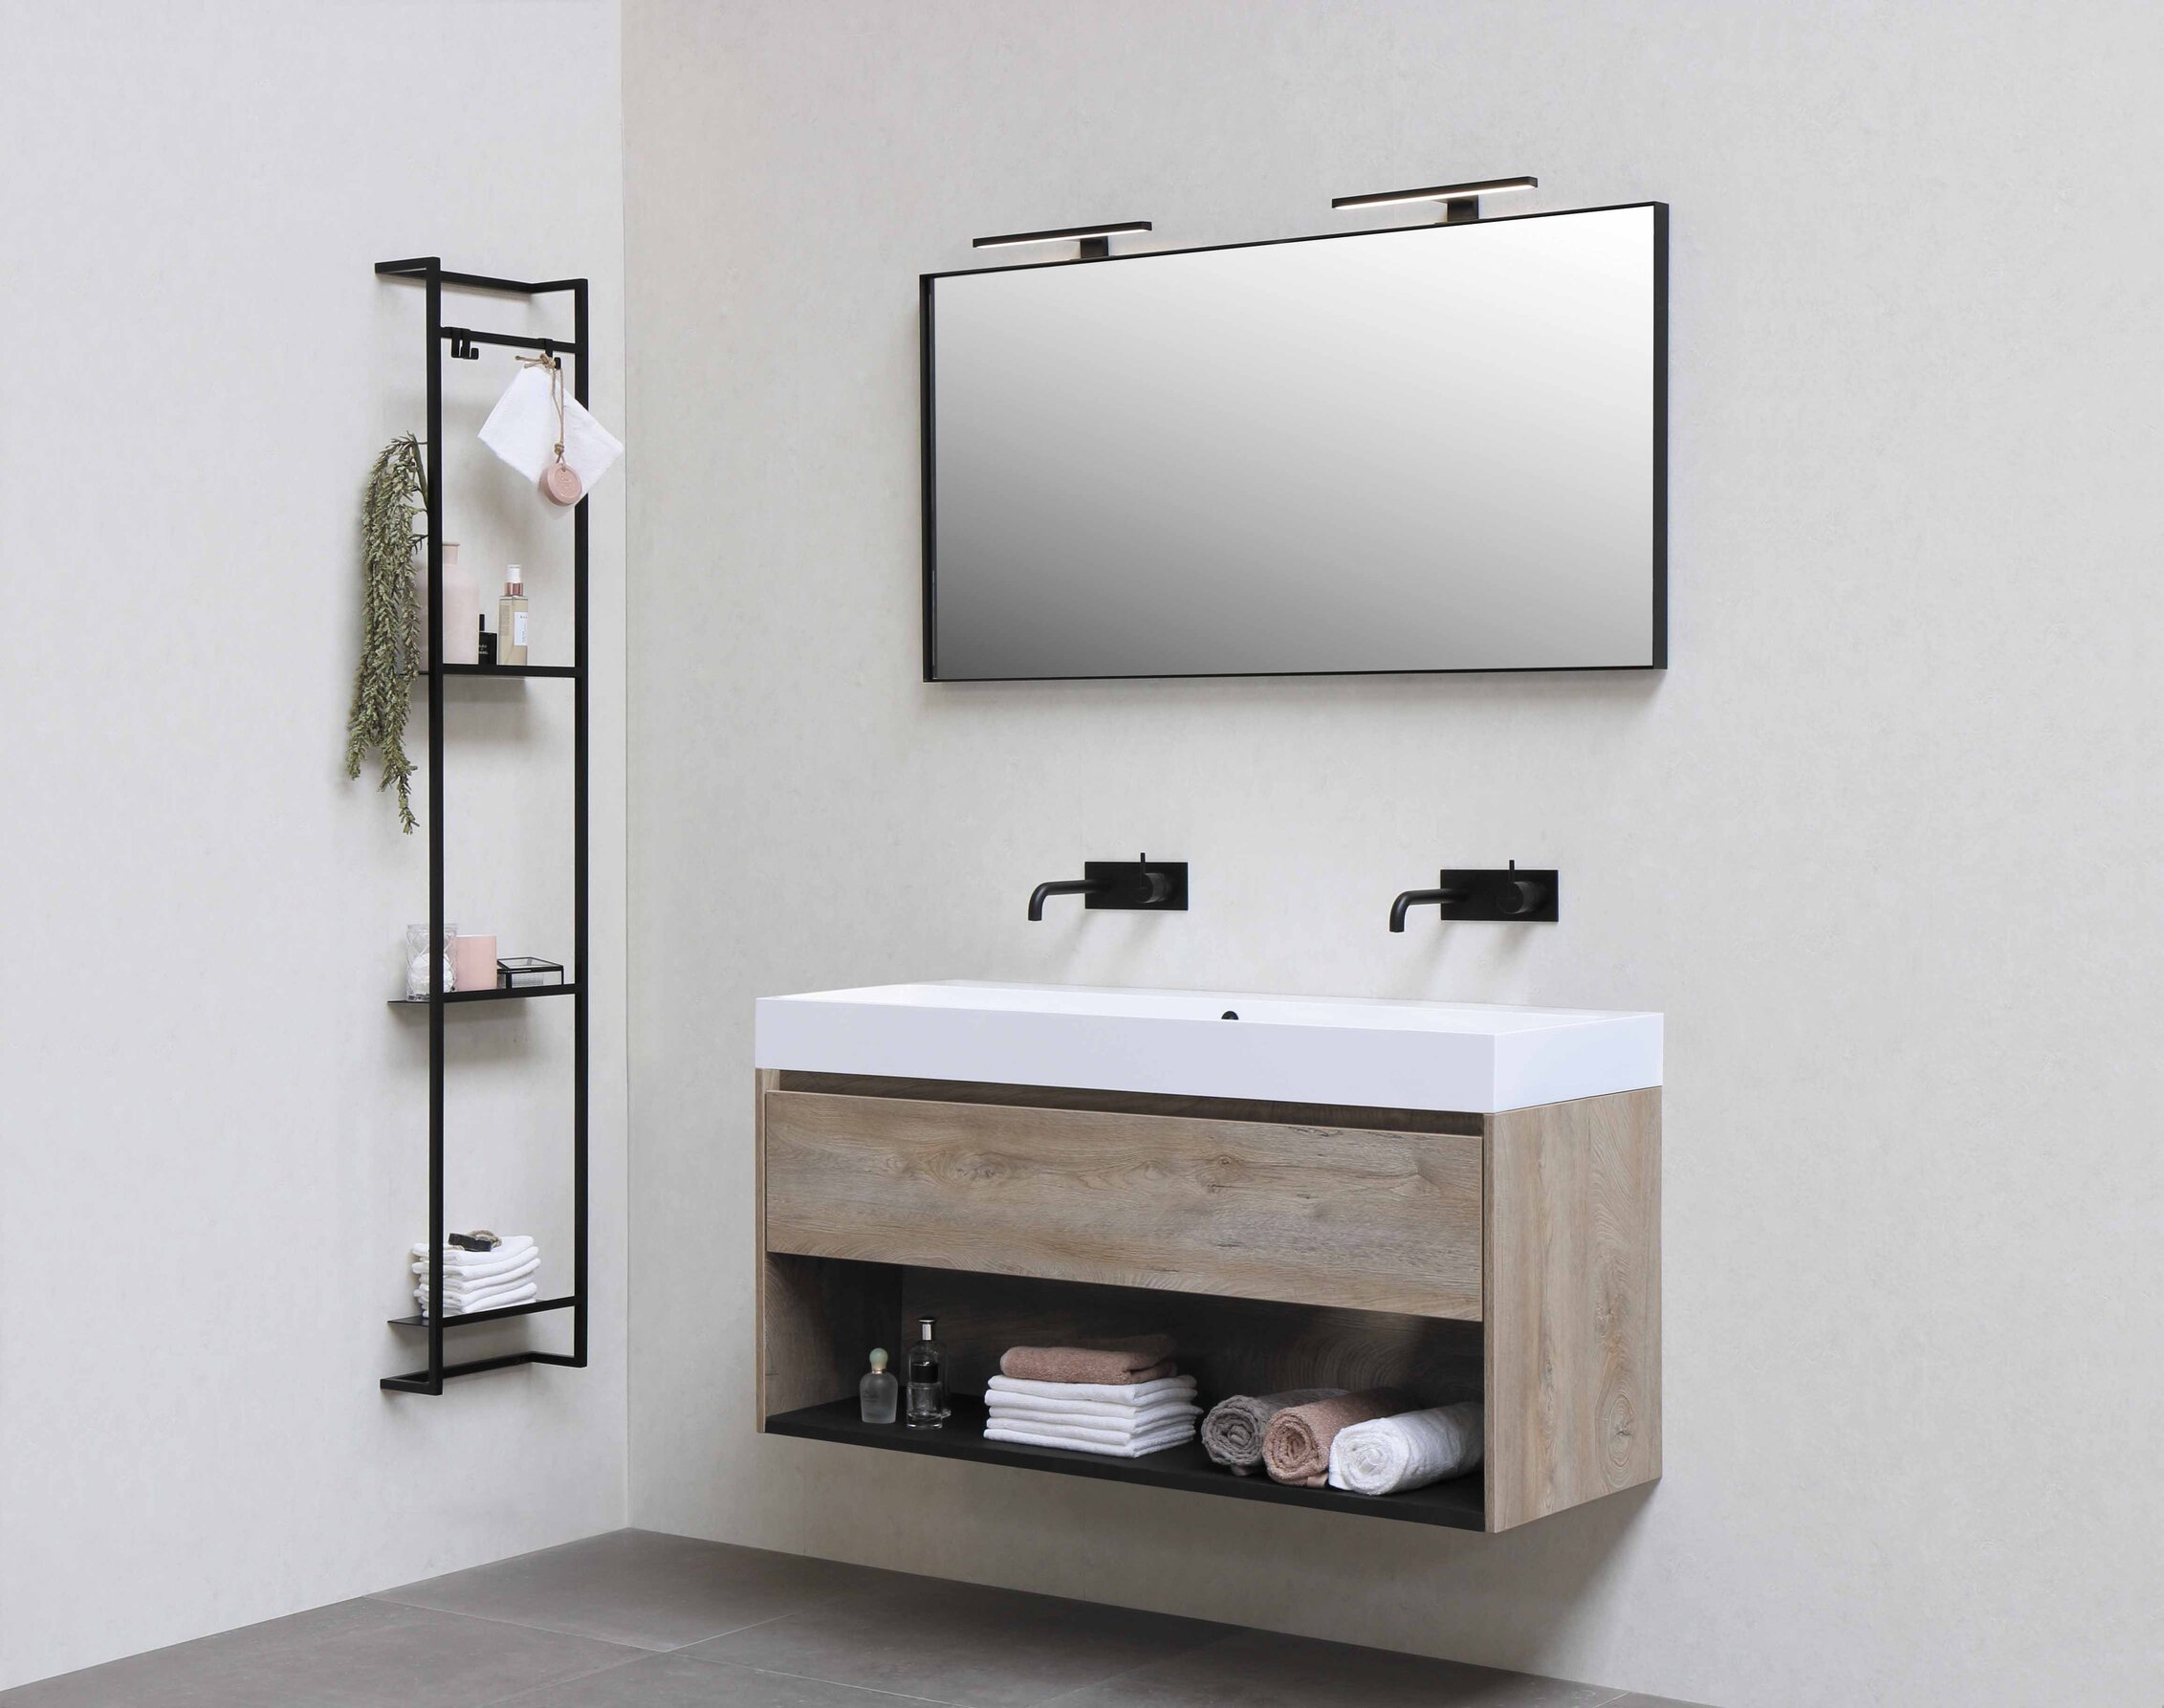 Moderne zariadená kúpelňa v minimalistickom štýle s drevenou závesnou skrinkou s dvoma umývadlami a so zrkadlom a kovovou regálovou policou s doplnkami ako napríklad šampóny a uteráky